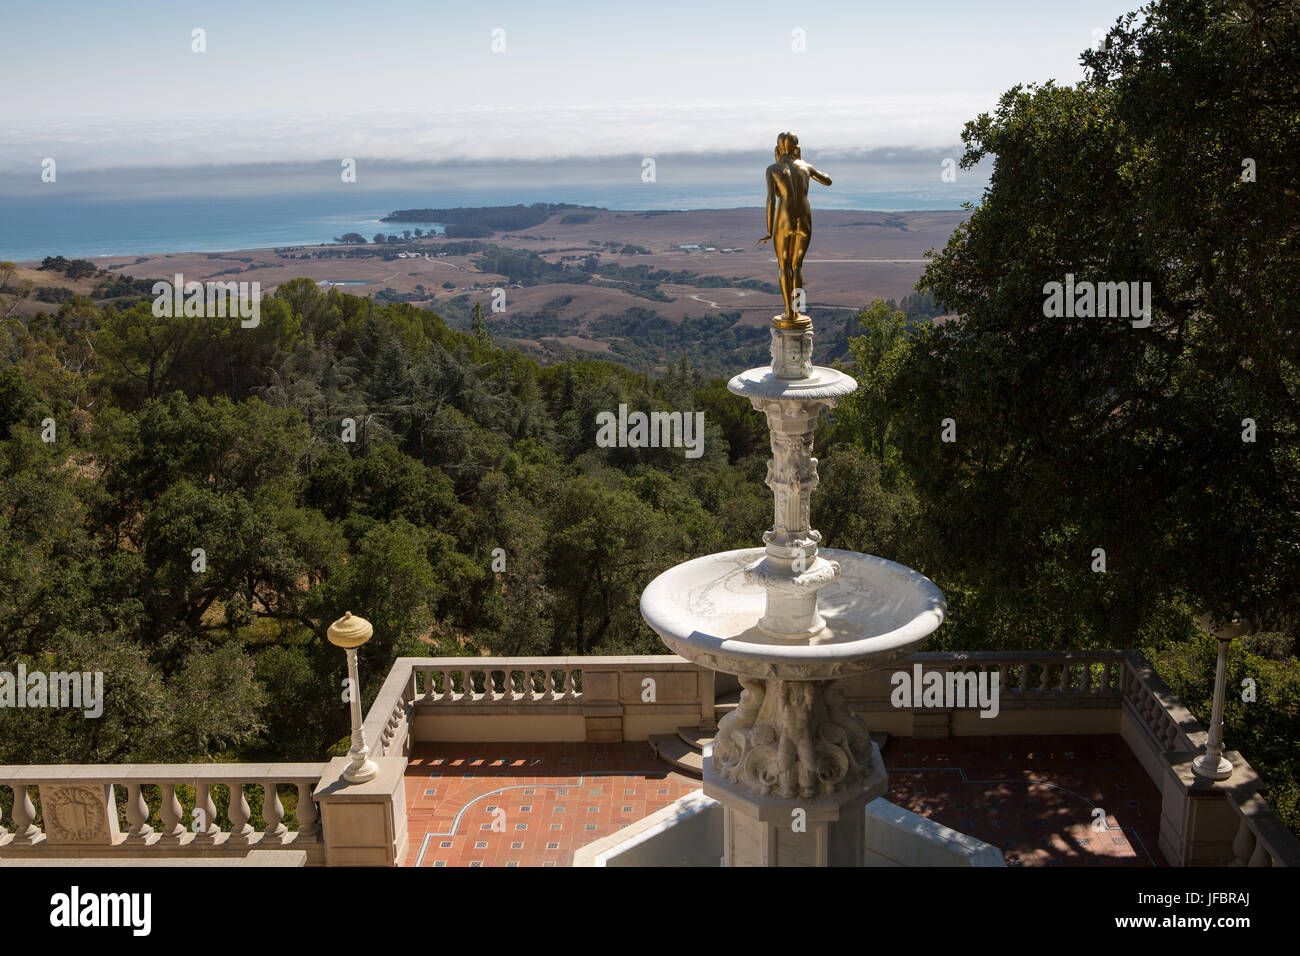 Una statua d'oro e una fontana su una veranda con vista sul Pacifico e la San Simeon costa. Foto Stock